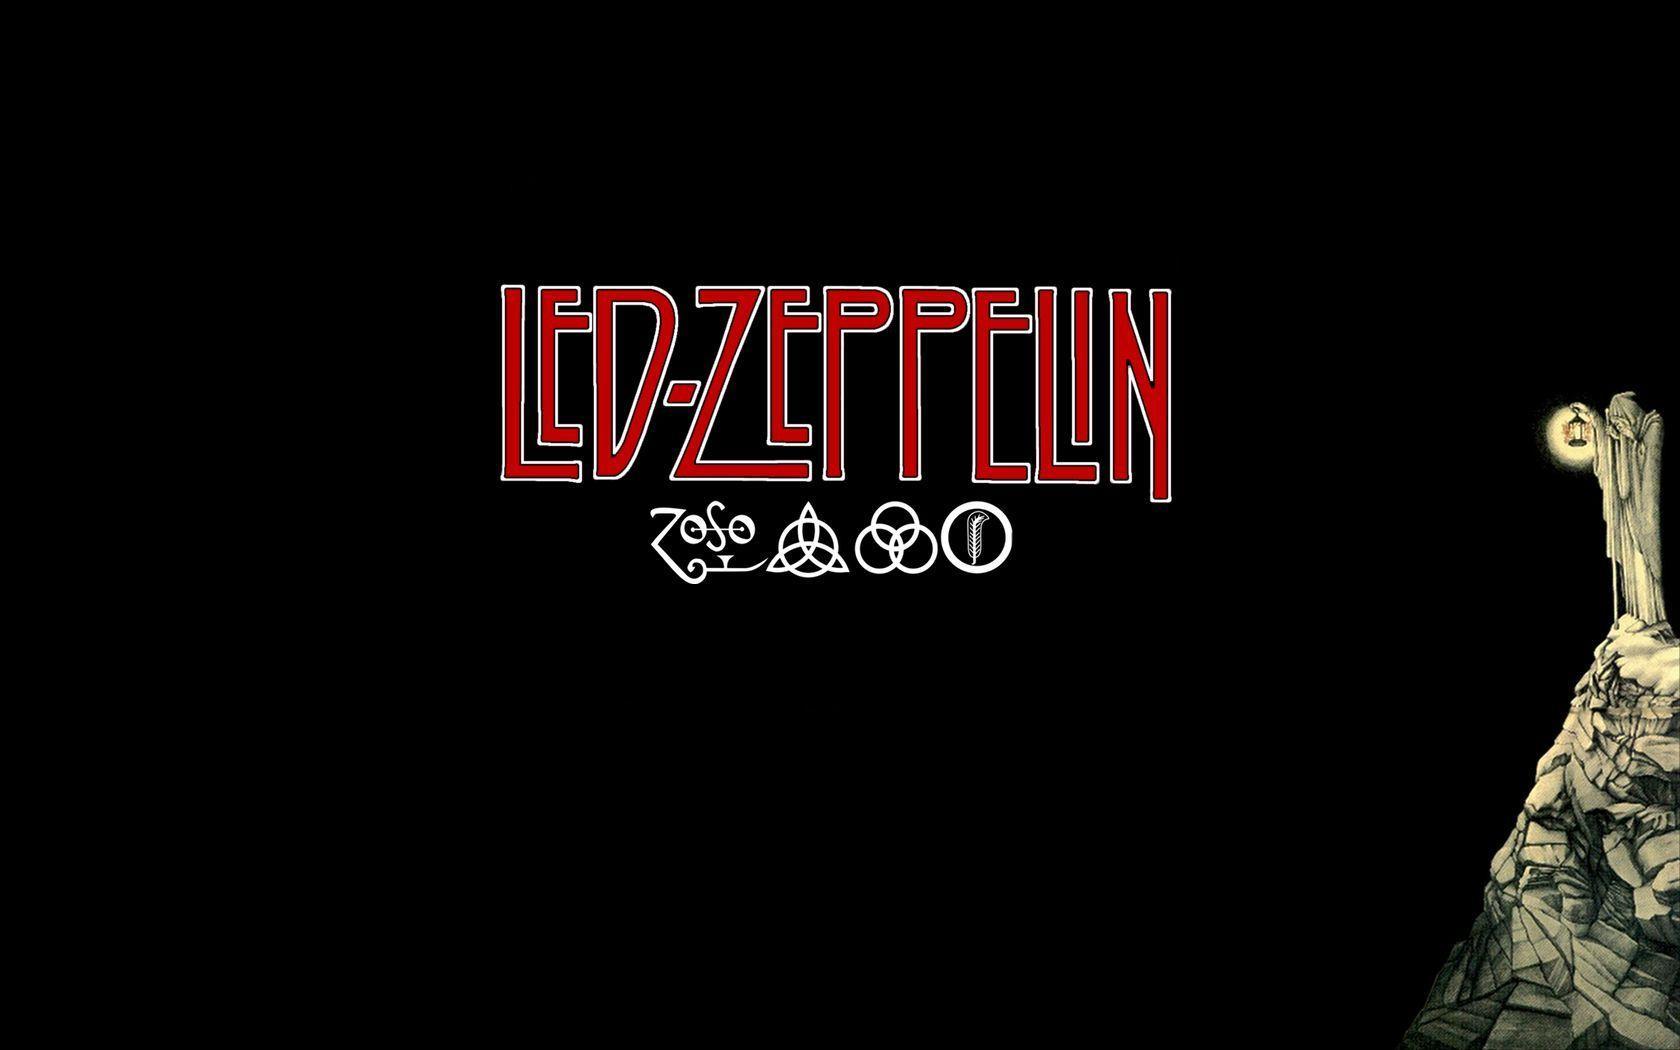 Led Zeppelin Computer Wallpapers, Desktop Backgrounds 1680x1050 Id